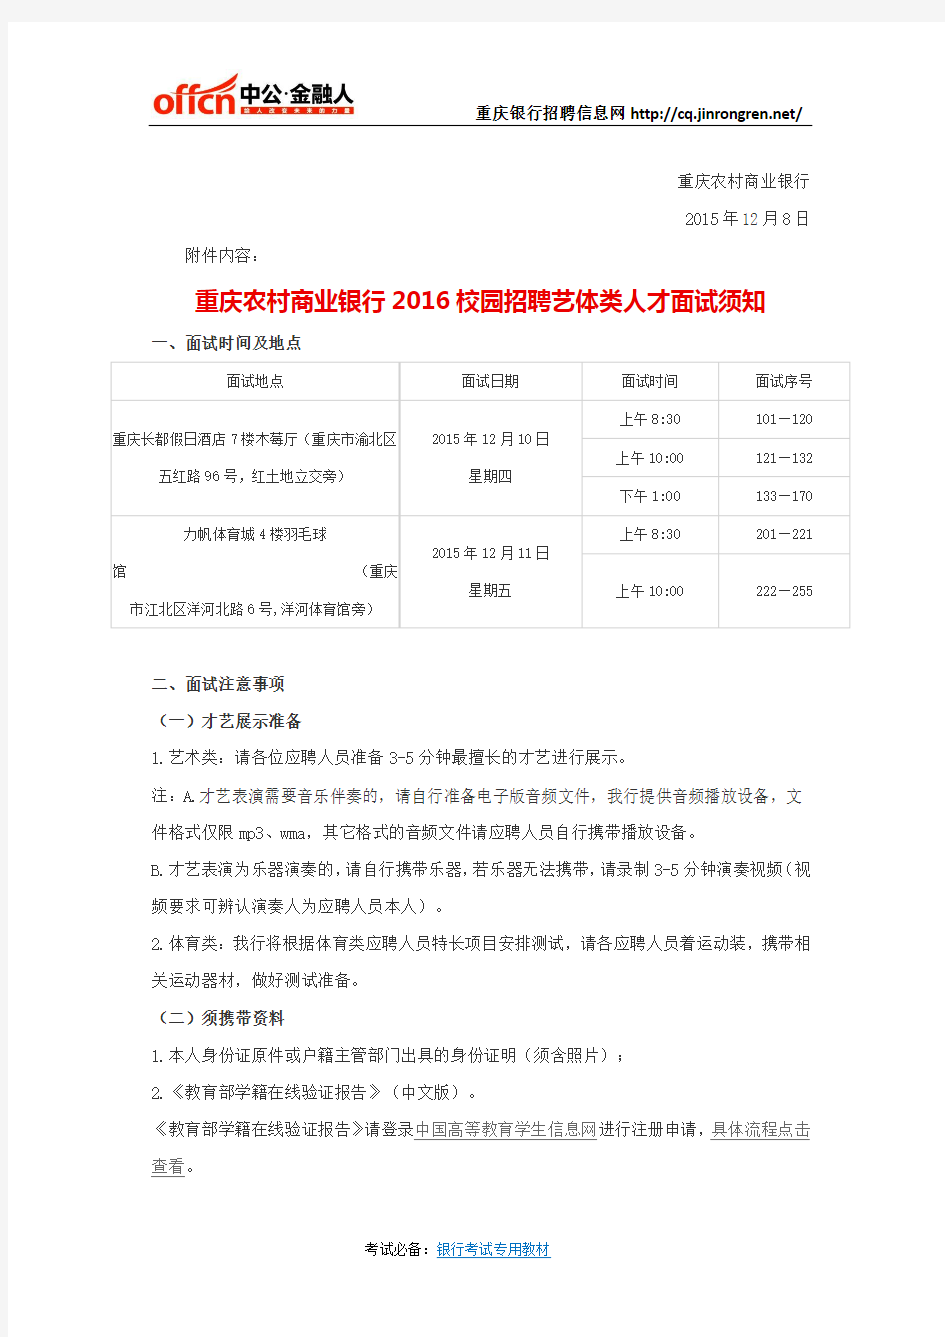 重庆农村商业银行2016校园招聘测试人员名单